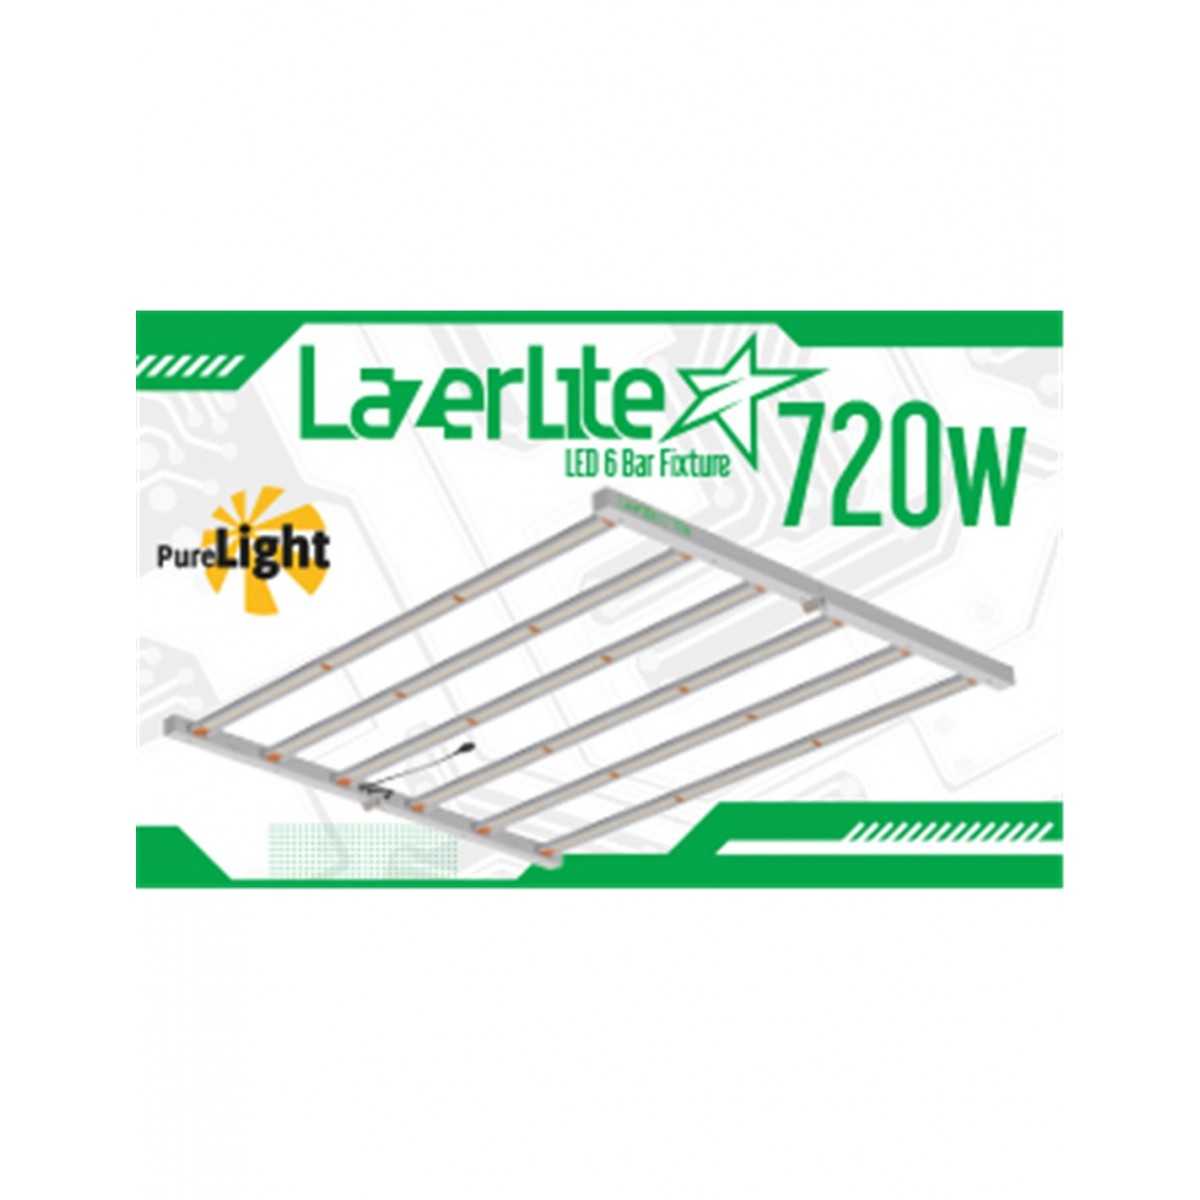 LUMINARIA LAZERLITE LED 720W + BALASTRO LAZERLITE